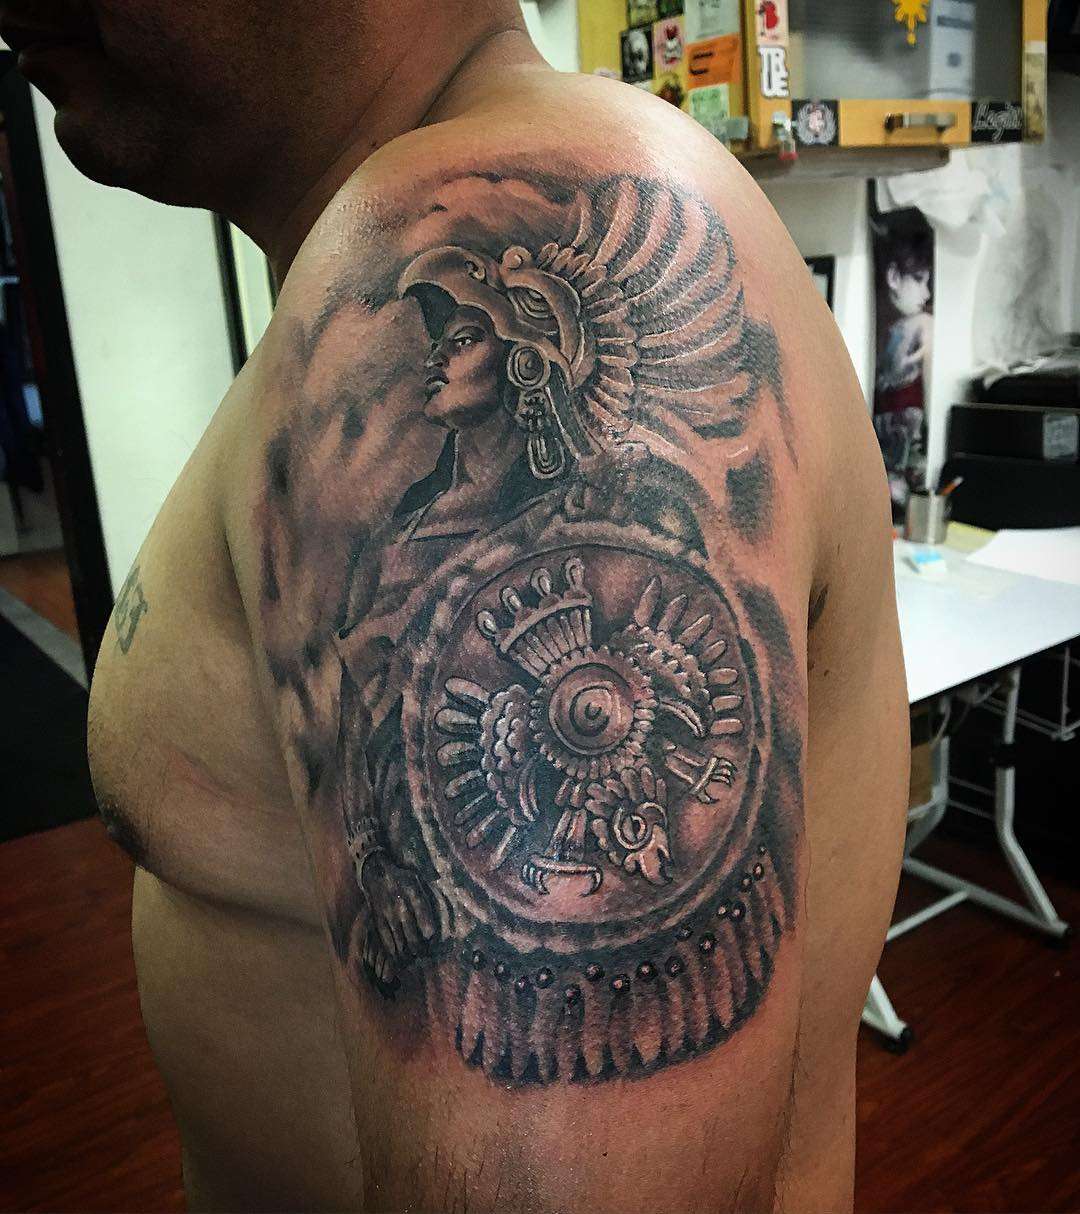 Tatuaje de guerrero azteca en el brazo